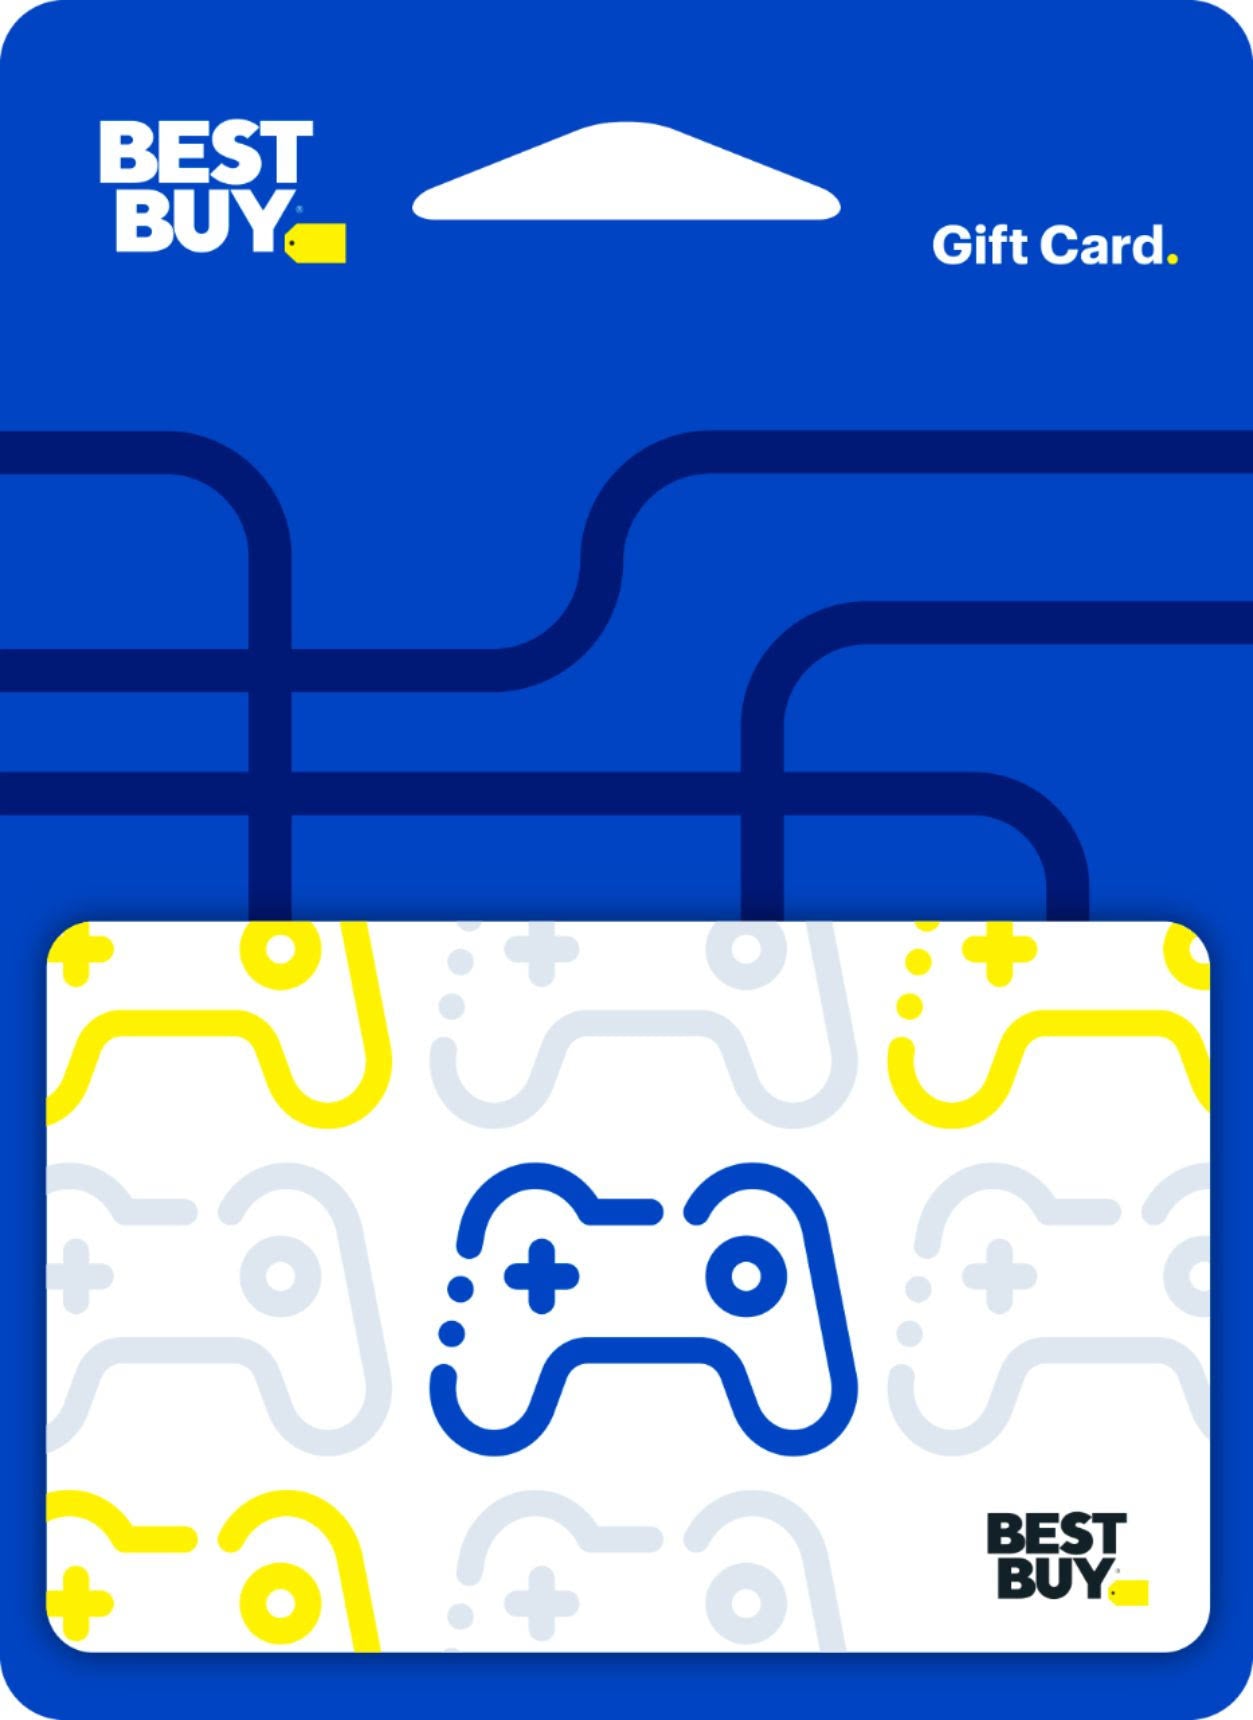 $100 Gamer Gift Card